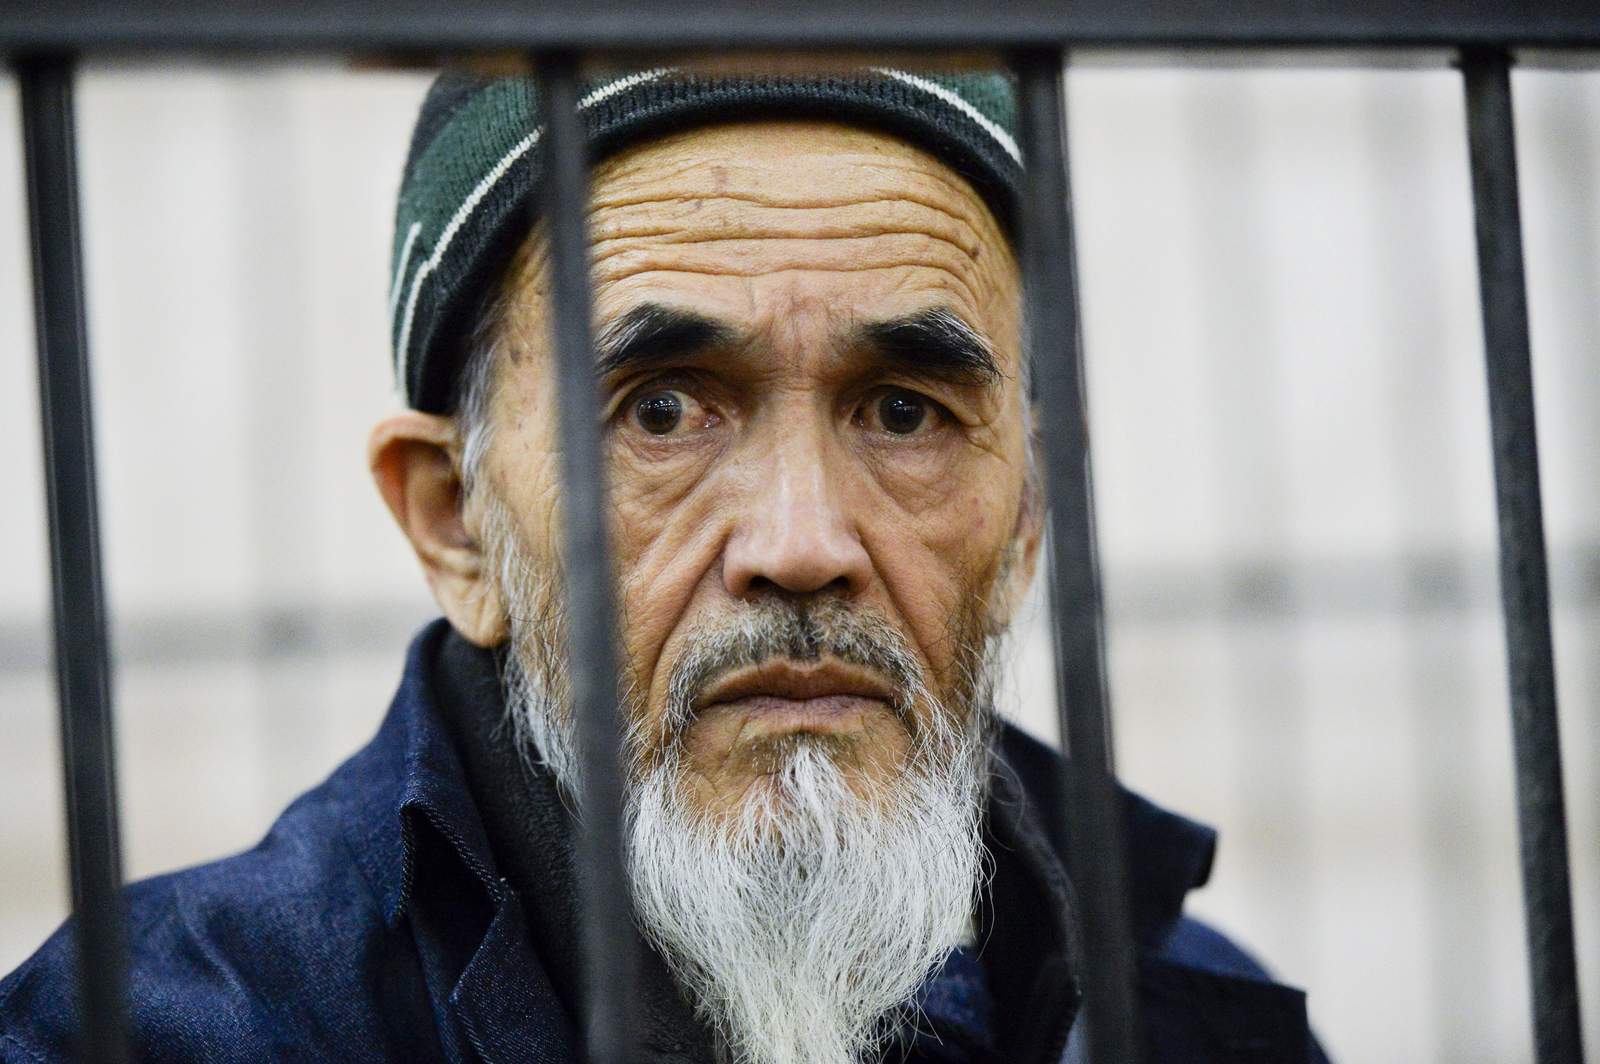 Kyrgyzstans rights activist Azimzhan Askarov dies at 69